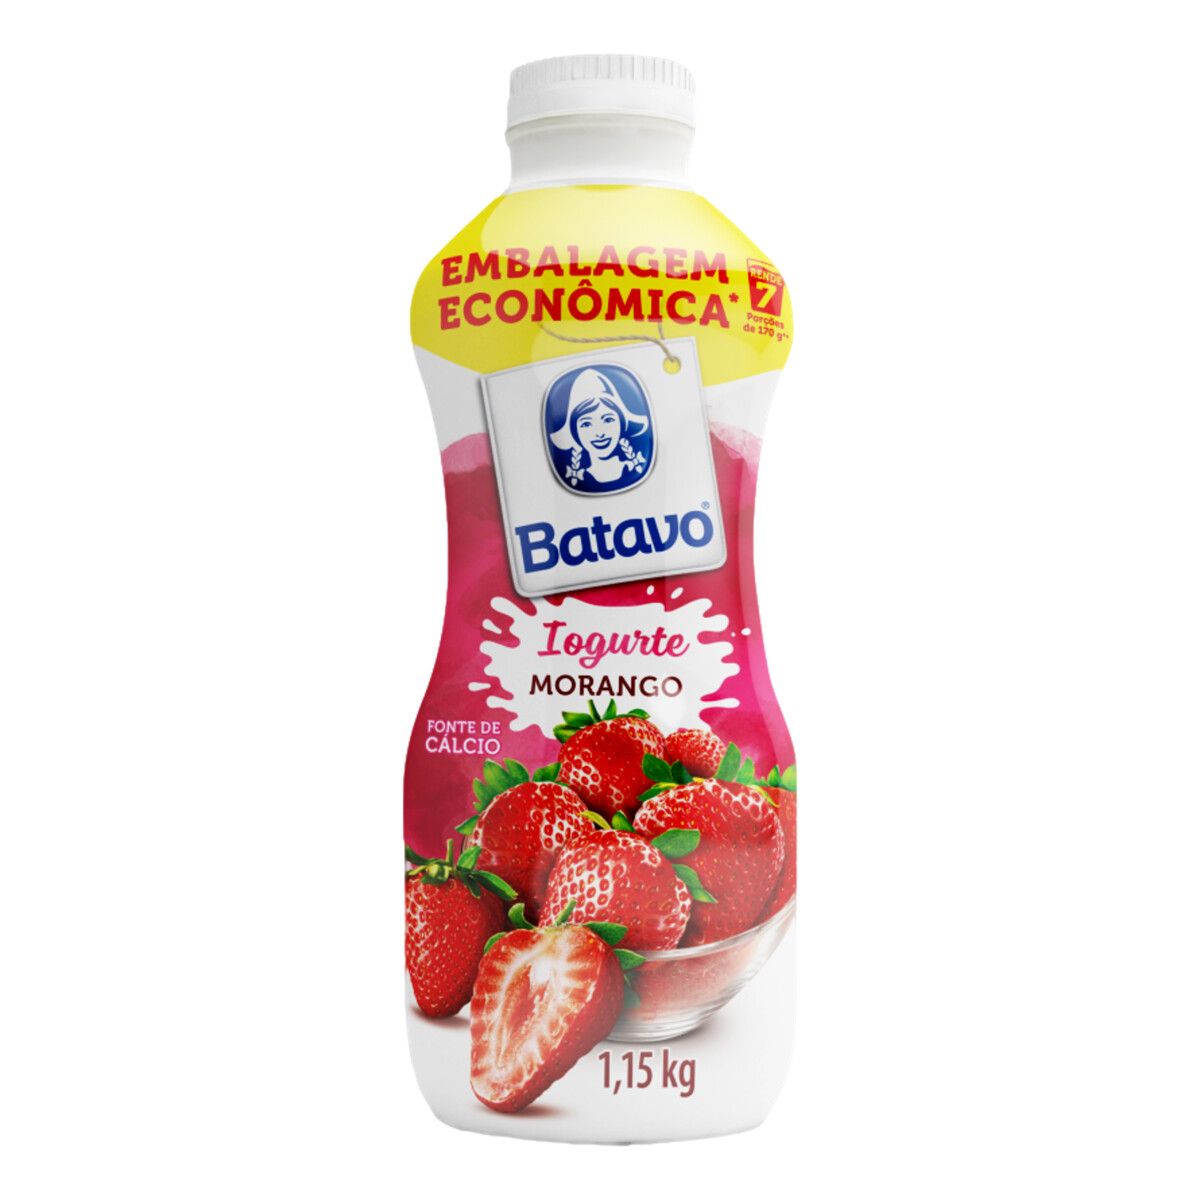 Iogurte Batavo Parcialmente Desnatado Morango 1,15kg Embalagem Econômica